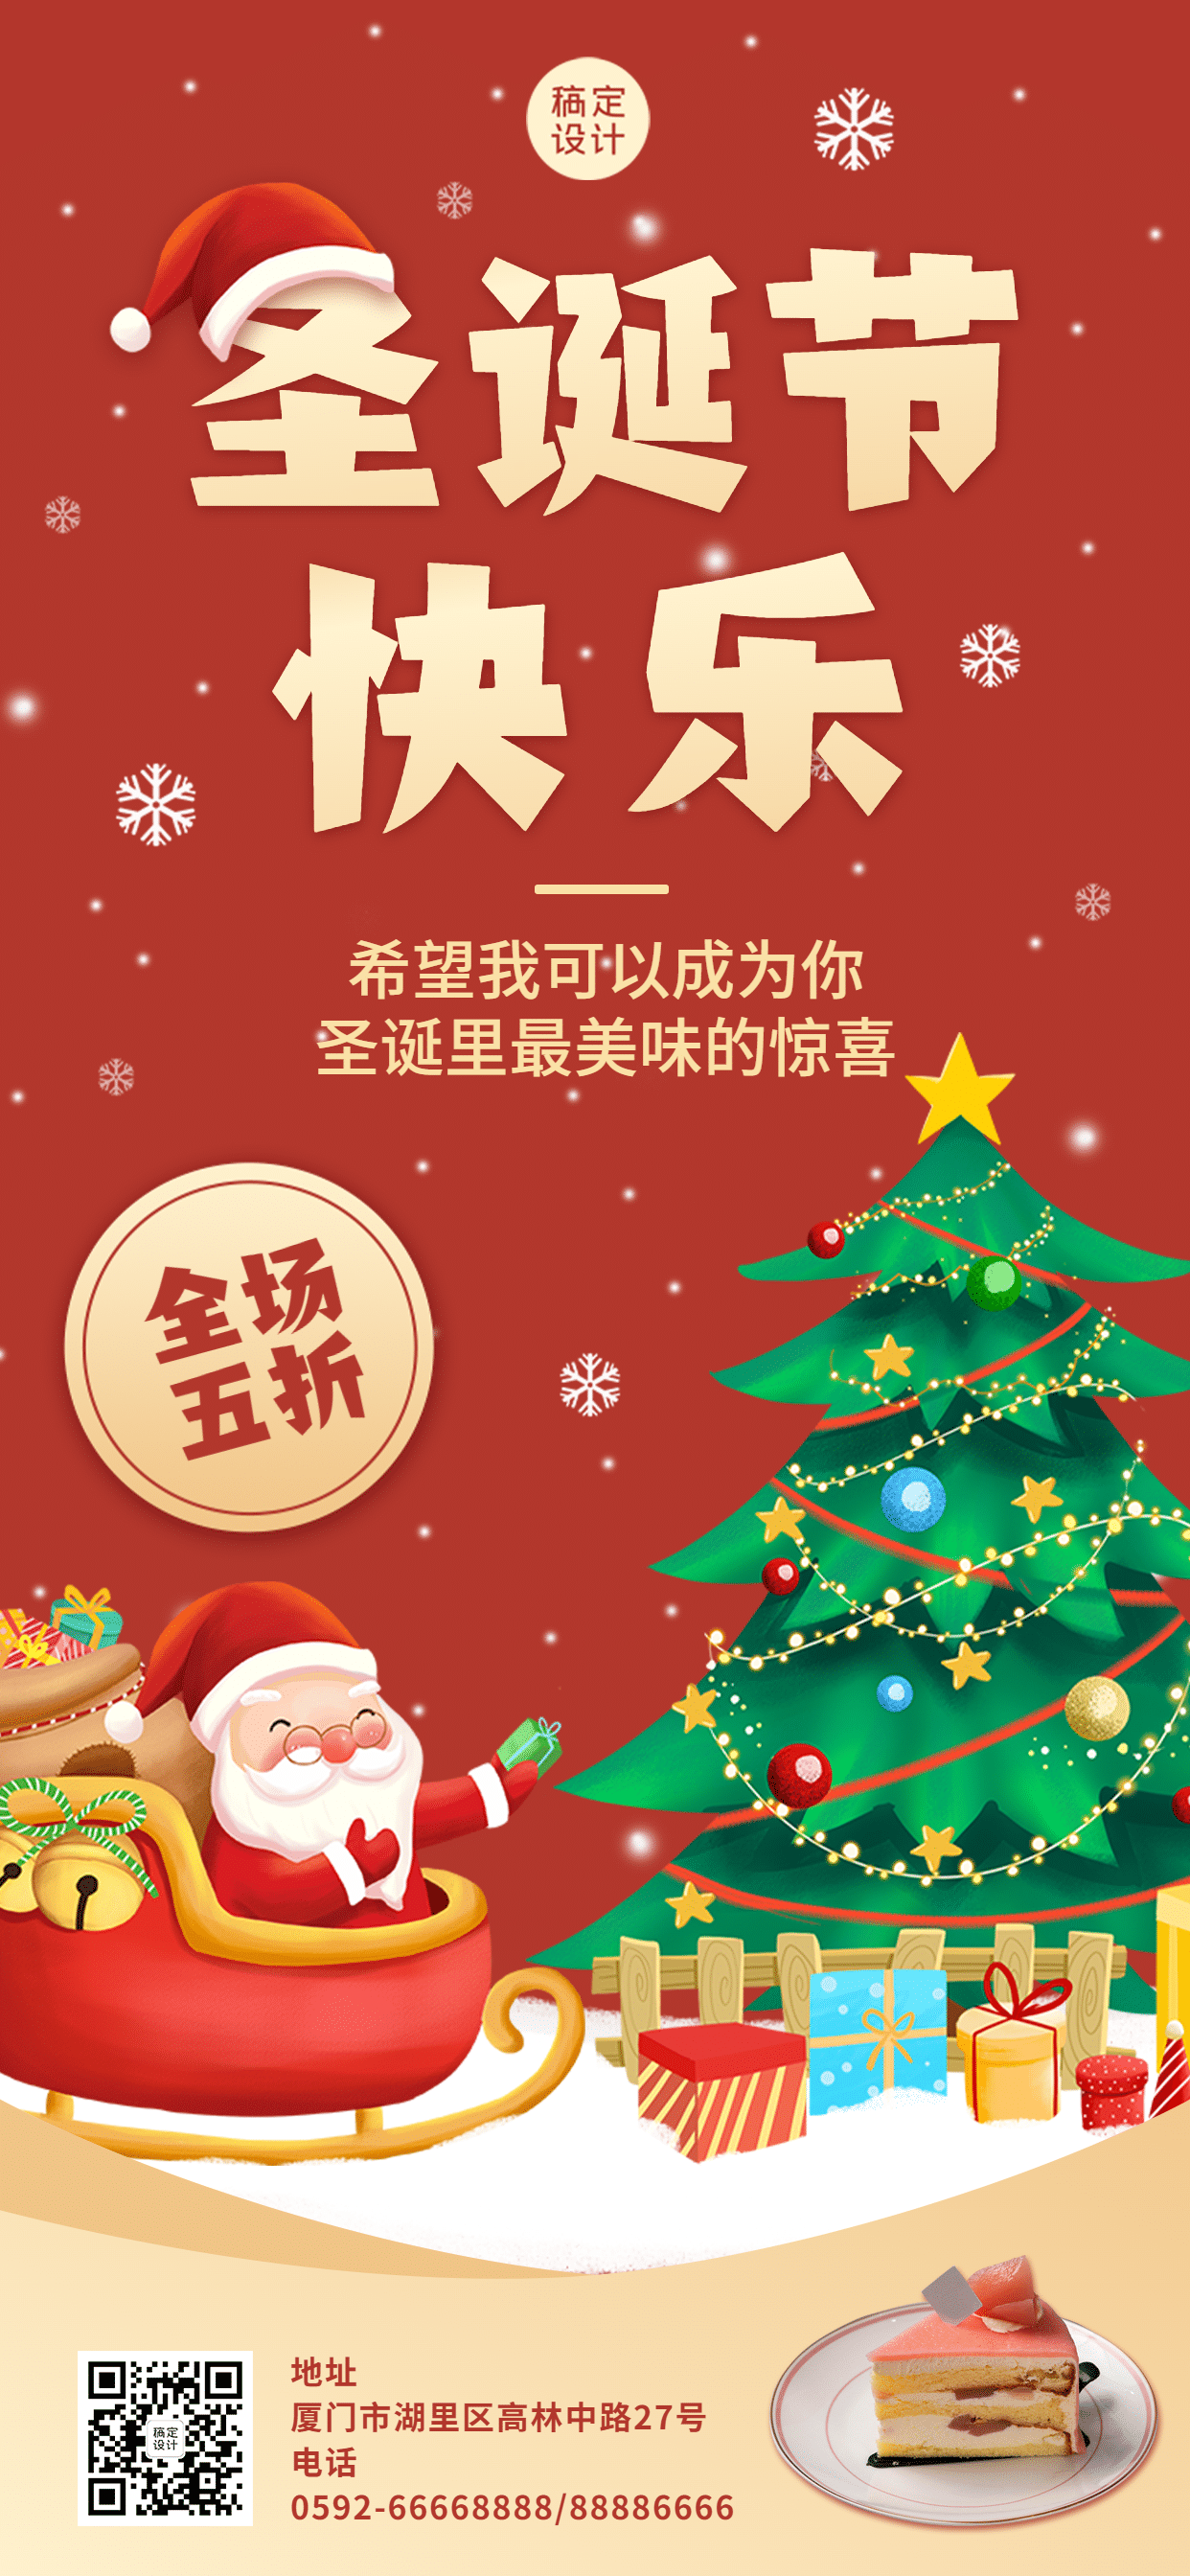 圣诞节烘焙甜品节日营销喜庆海报预览效果